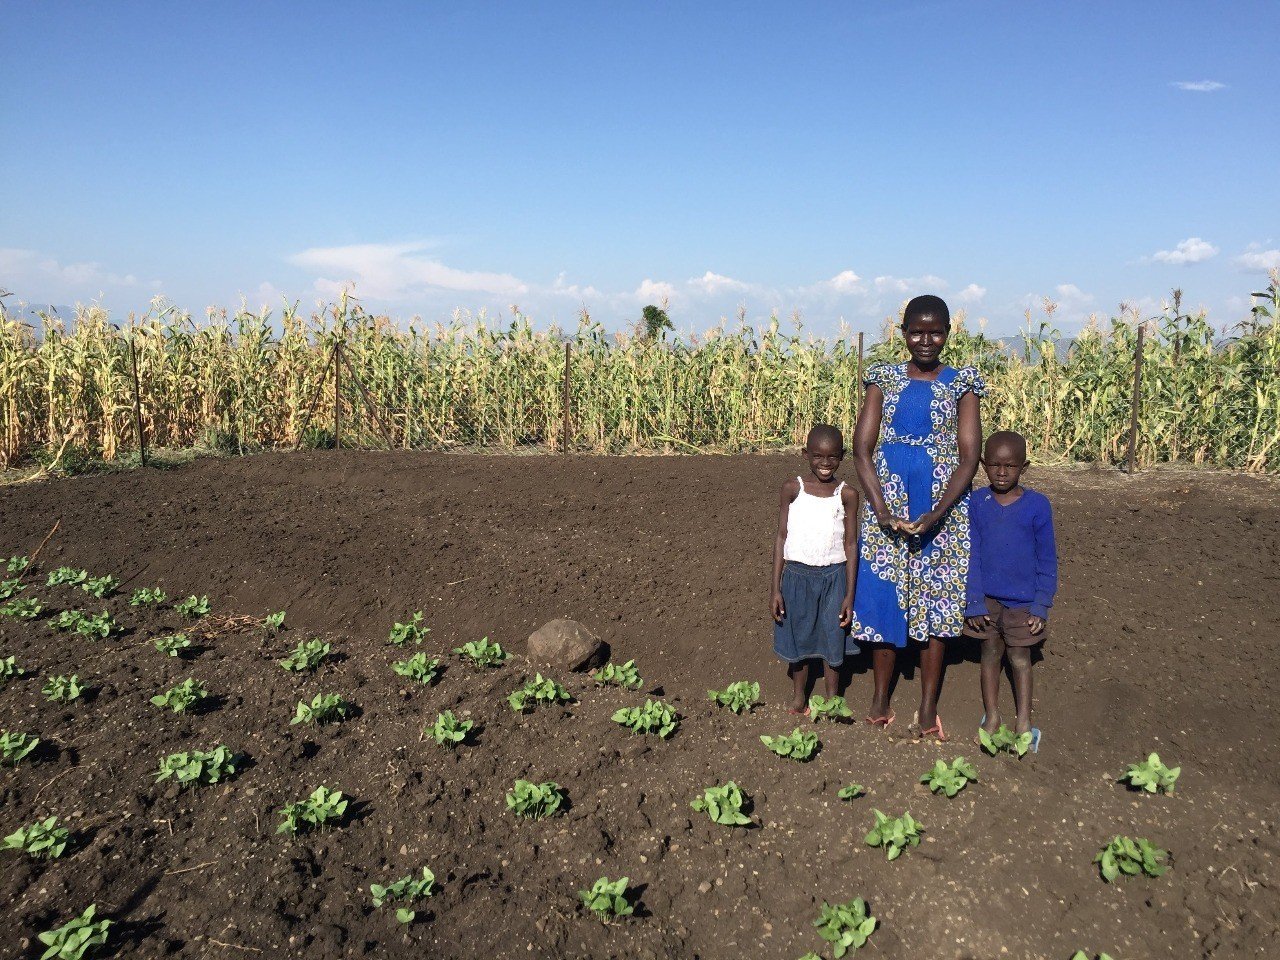 活動報告書 ケニア共和国における孤児と脆弱な状況にある子どもたち Ovc と保護者を支える生活向上支援事業 在来種野菜と樹木の栽培を組み合わせた農業活動の導入を通じて Plas プラス 公式 Note